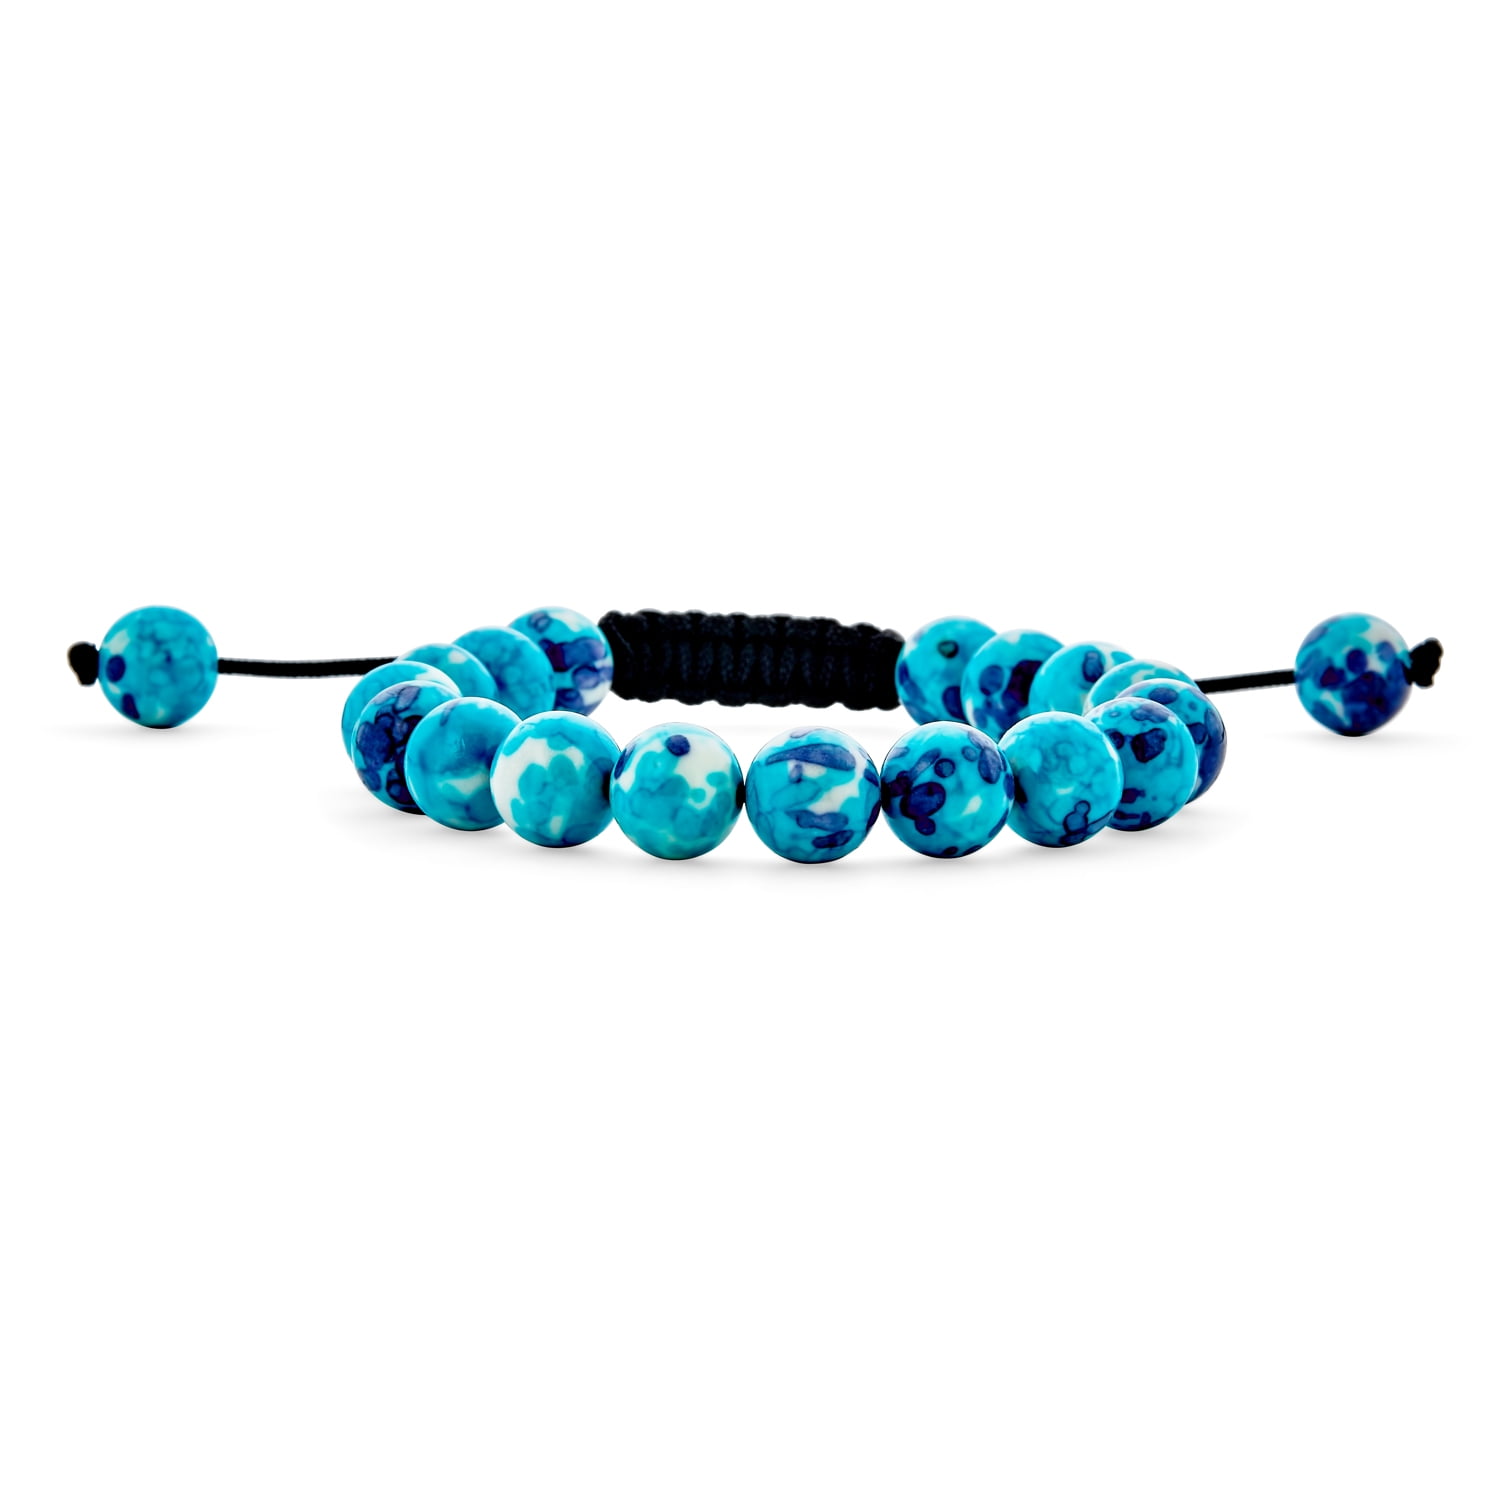 Teal sea spacer bead bracelet